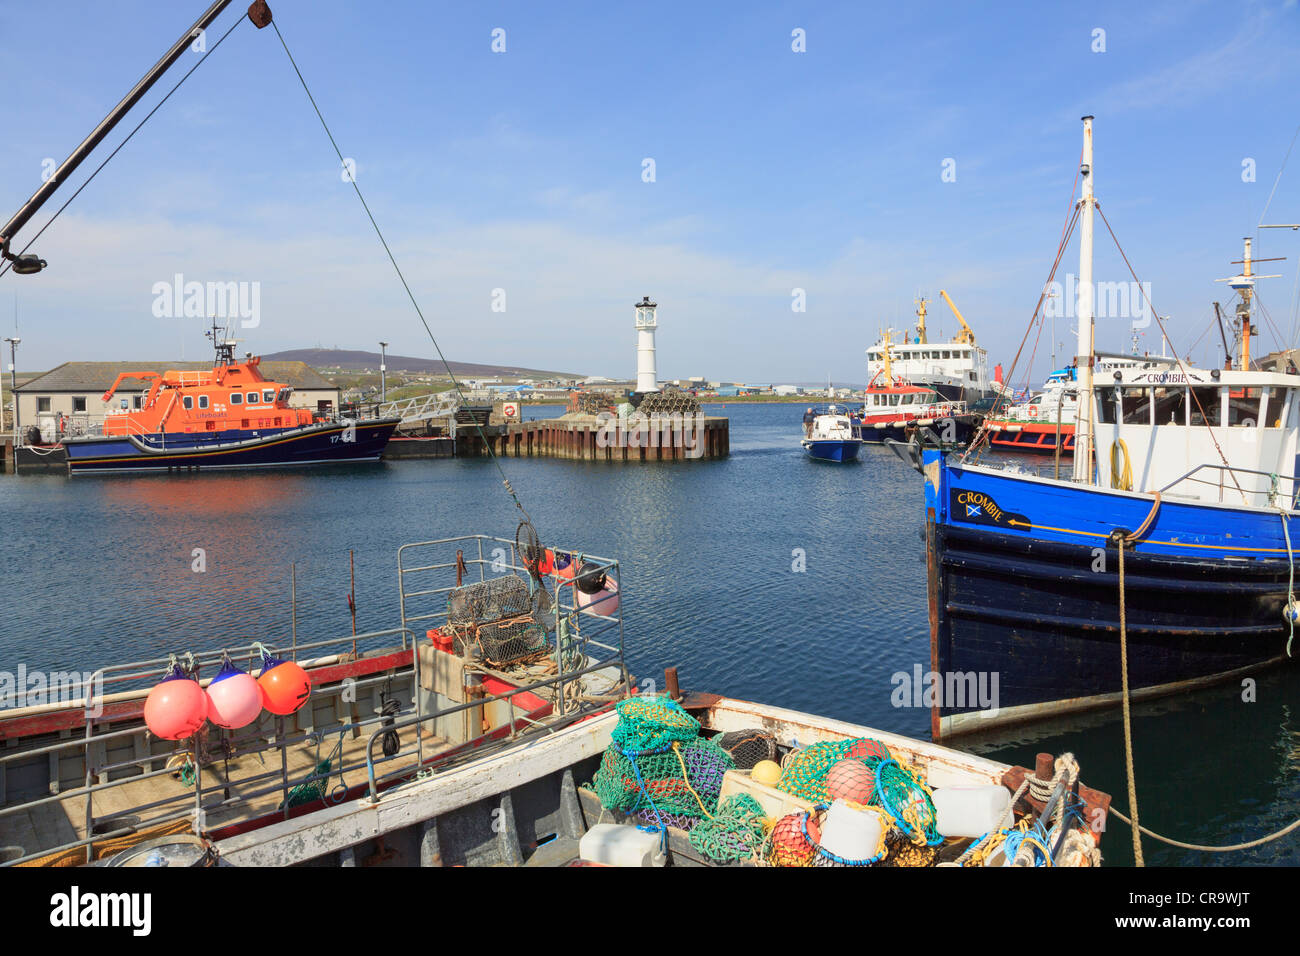 La pêche pélagique des bateaux amarrés dans le port intérieur de la RNLI lifeboat avec au-delà de Kirkwall, Orkney Islands Continent, Ecosse, Royaume-Uni Banque D'Images